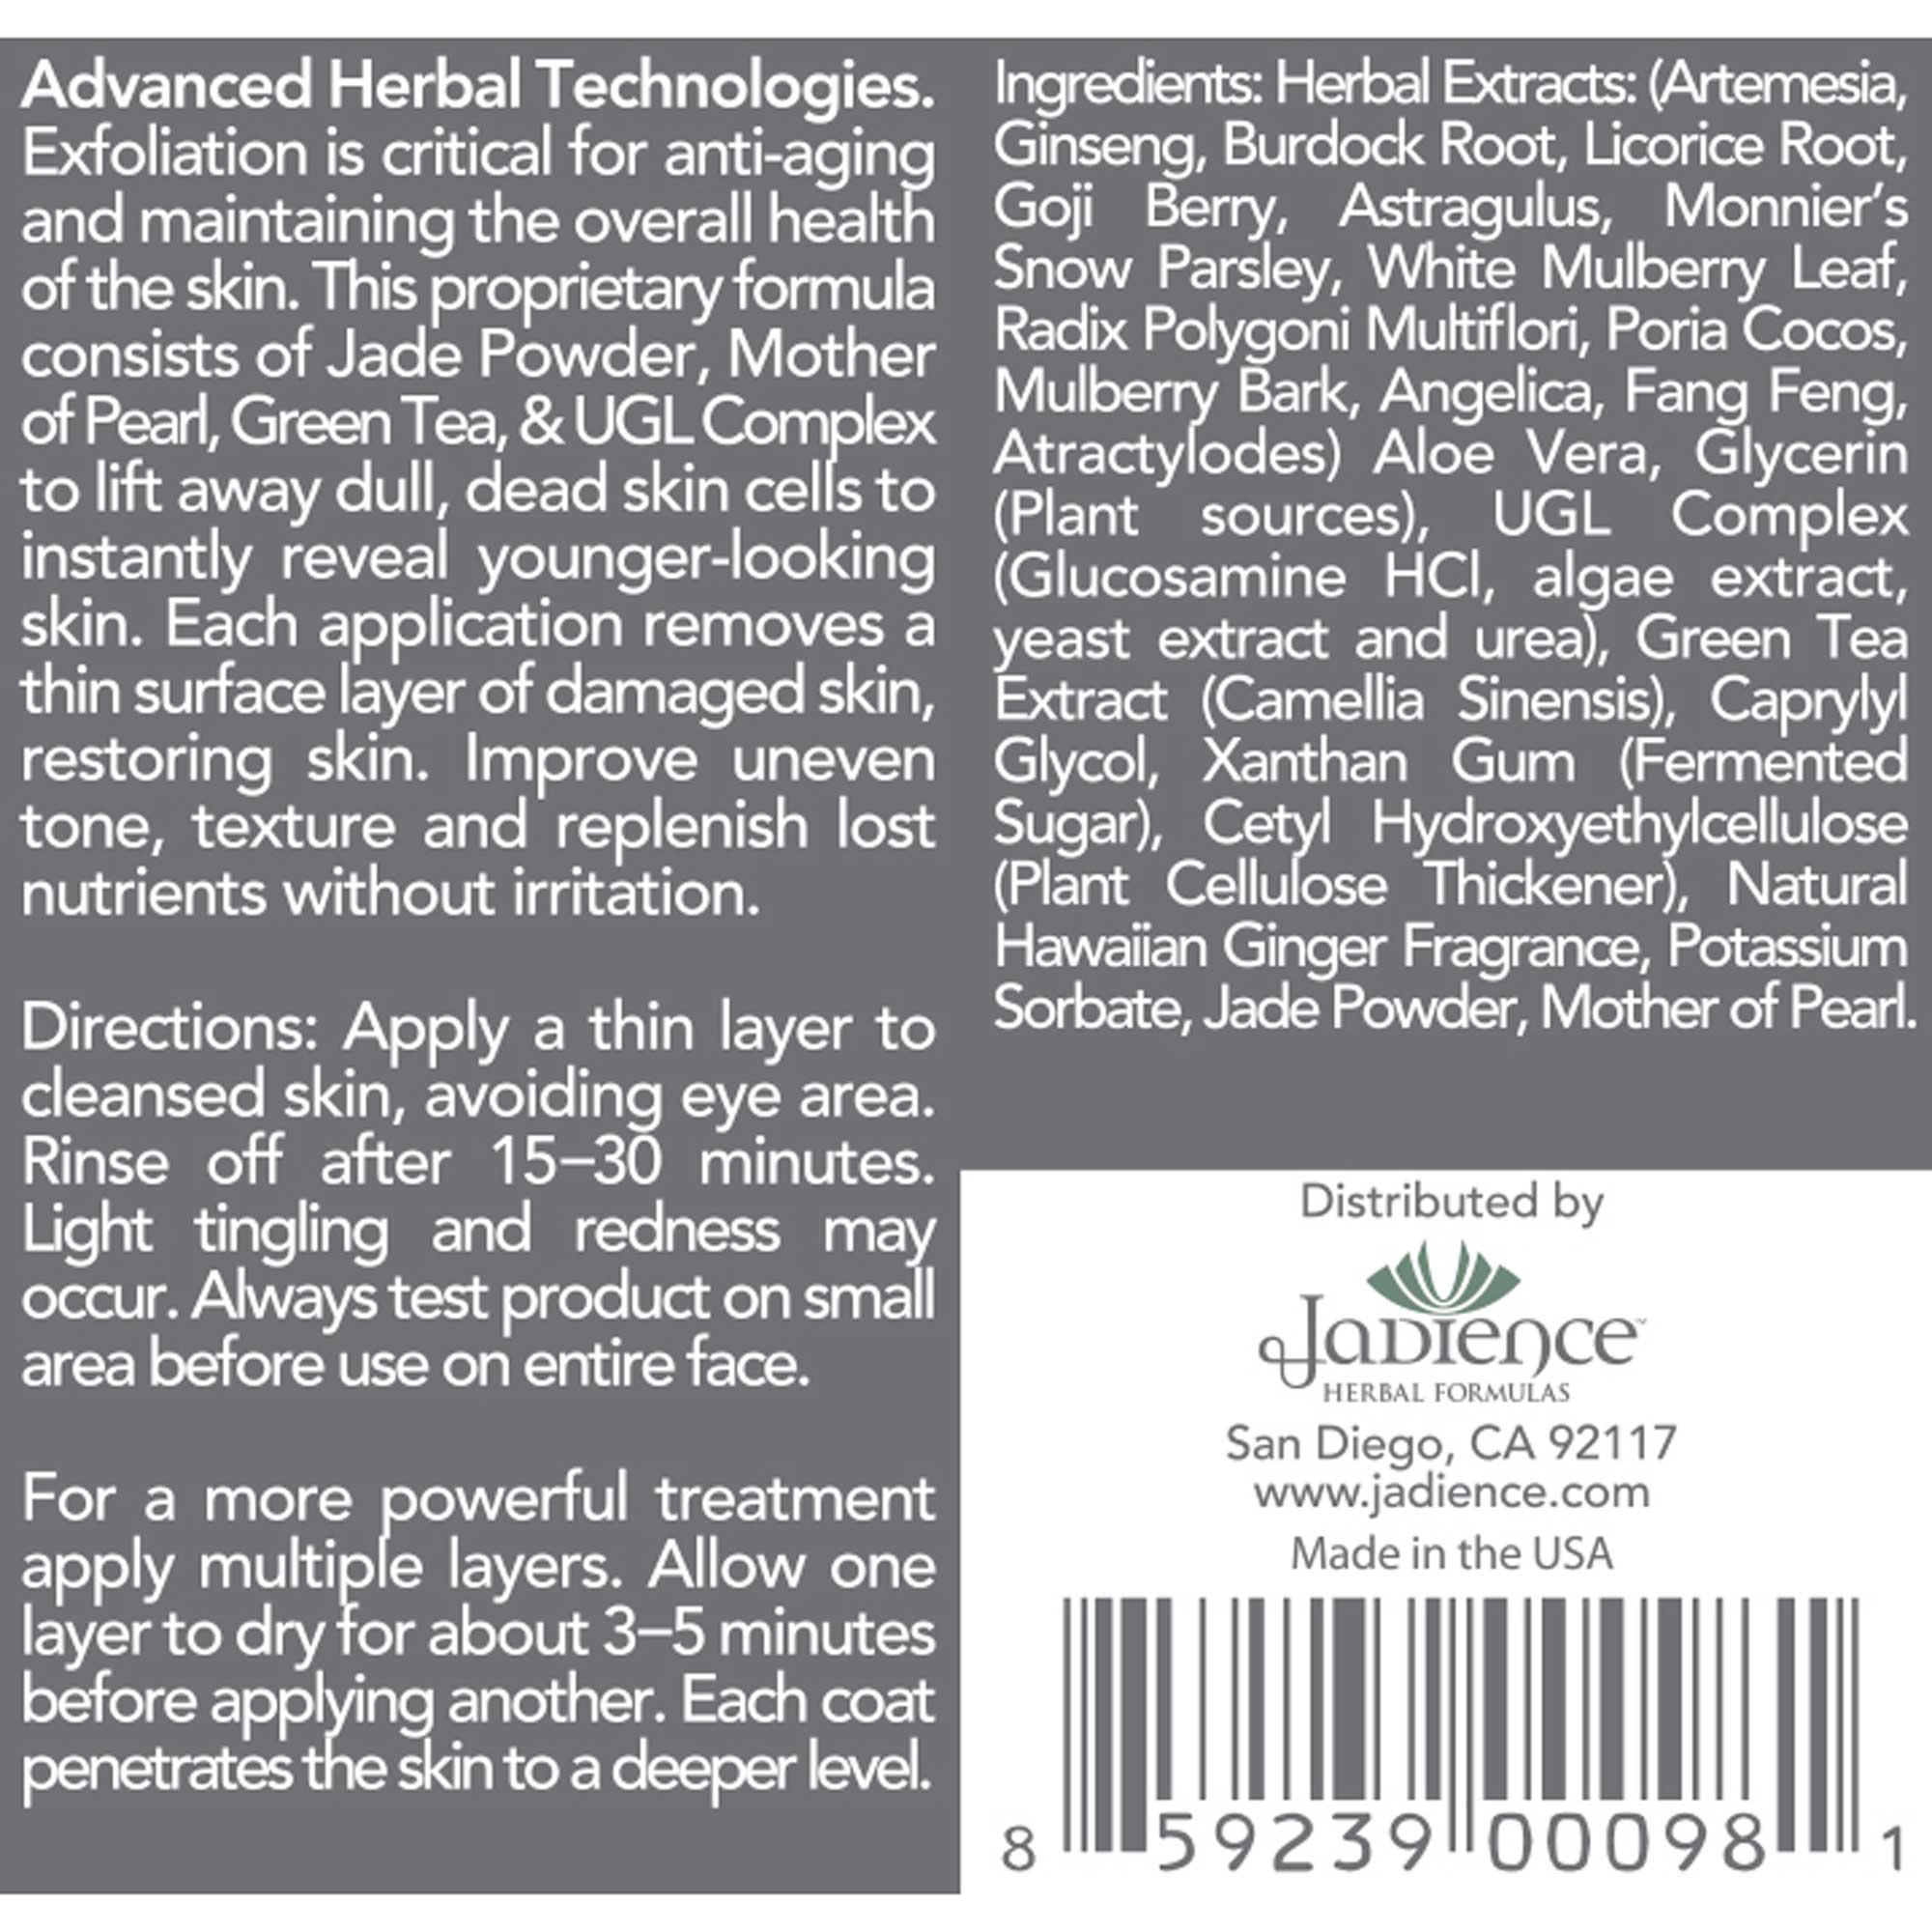 Jadience Herbal Formulas Jade and Pearl Resurfacing Peel with UGL Complex Ingredients